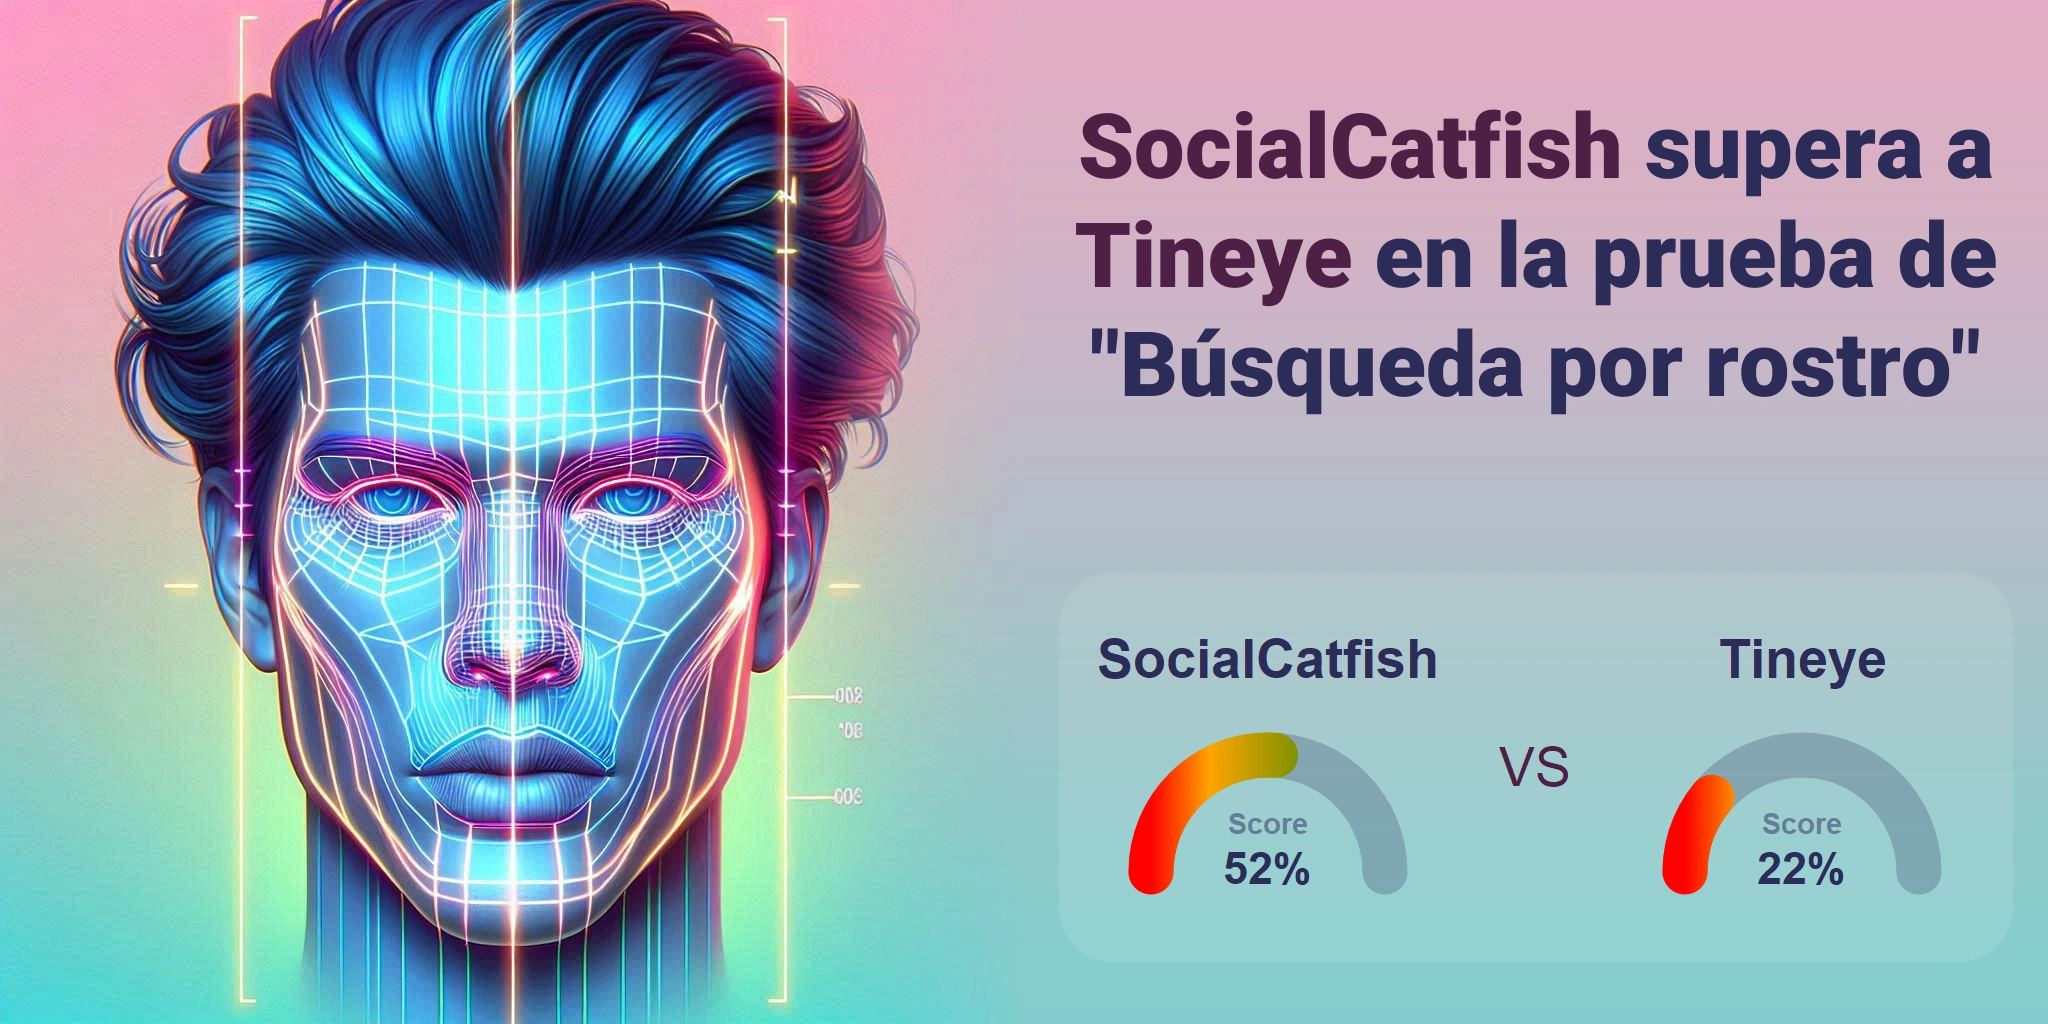 ¿Cuál es mejor para la búsqueda facial: <br>Tineye o SocialCatfish?